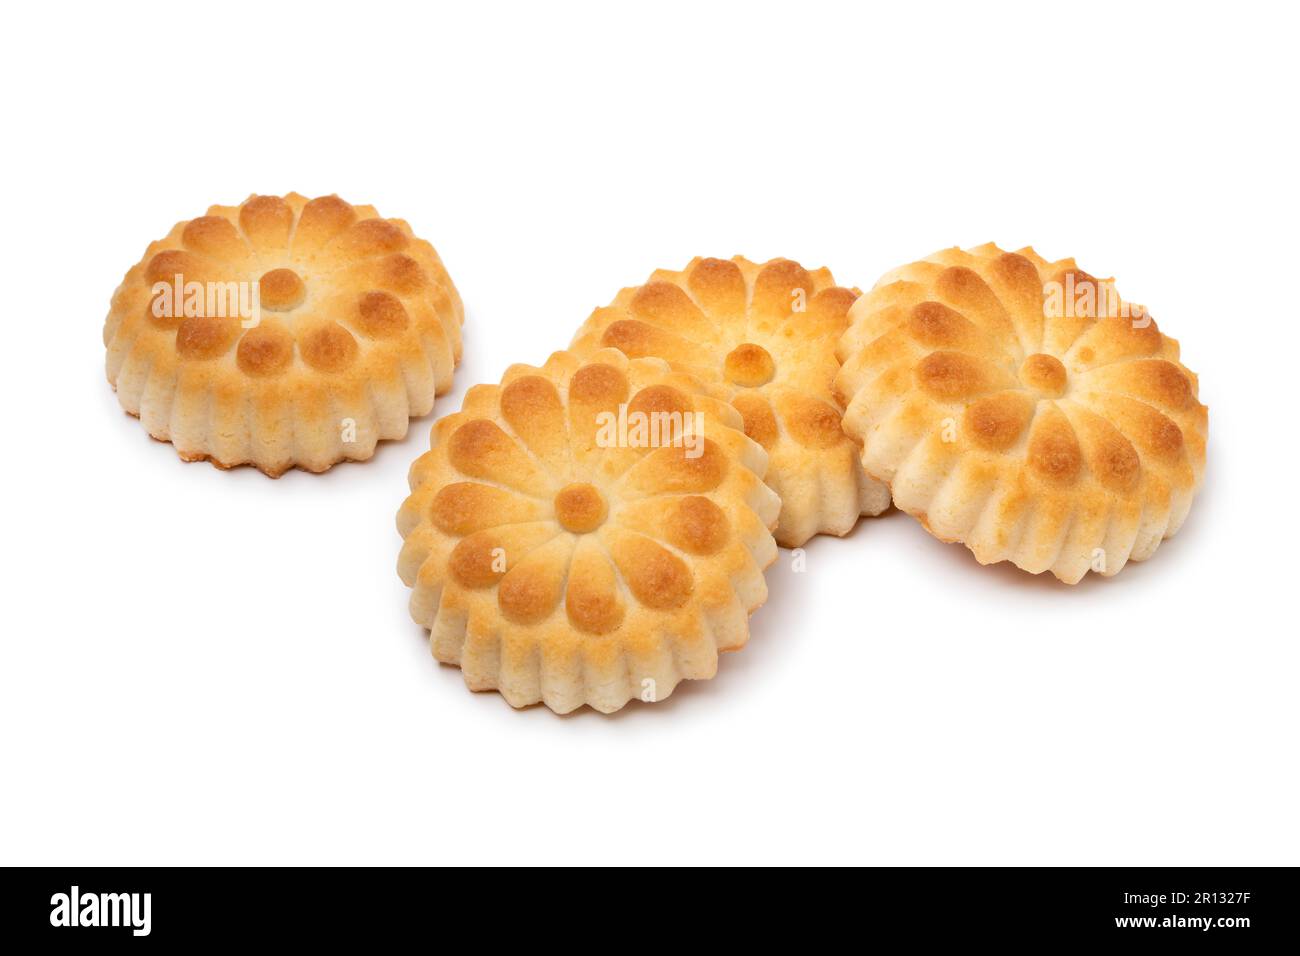 Biscuits Maamoul frais traditionnels farcis de dattes et cardamome isolés sur fond blanc Banque D'Images